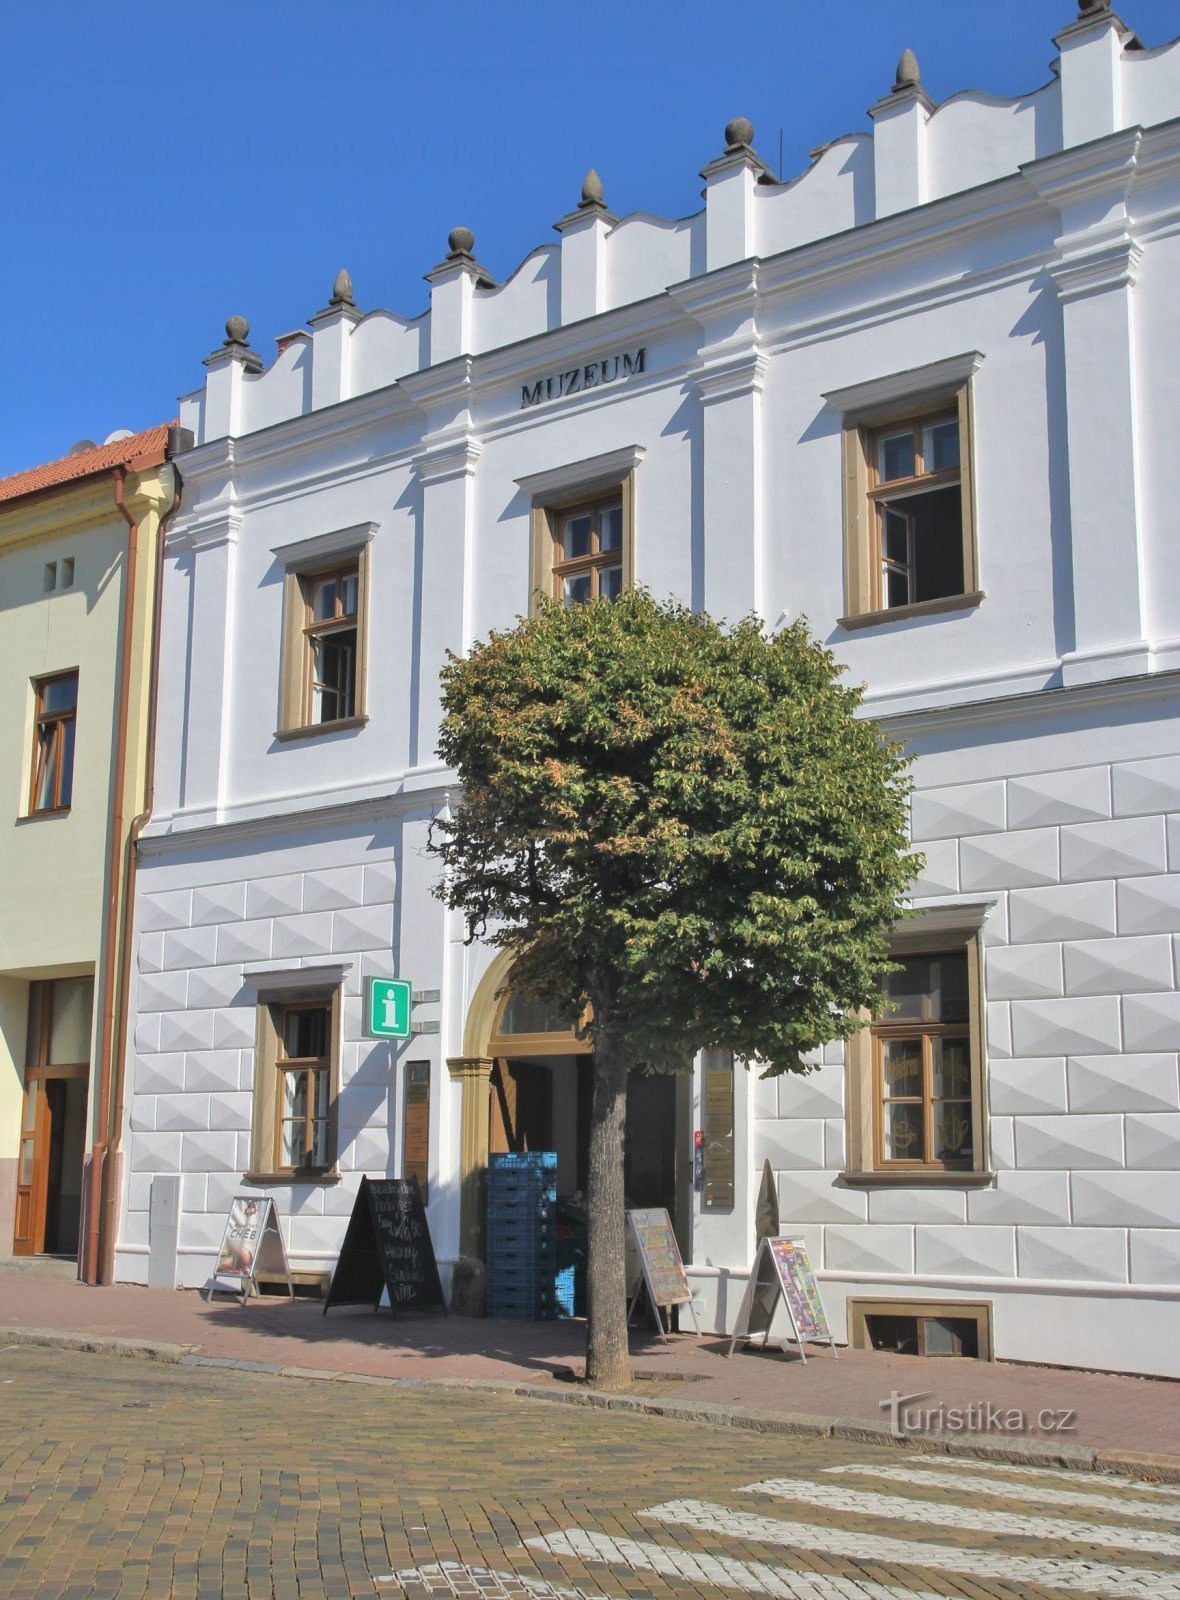 Moravský Krumlov - Kommunalt informationscenter